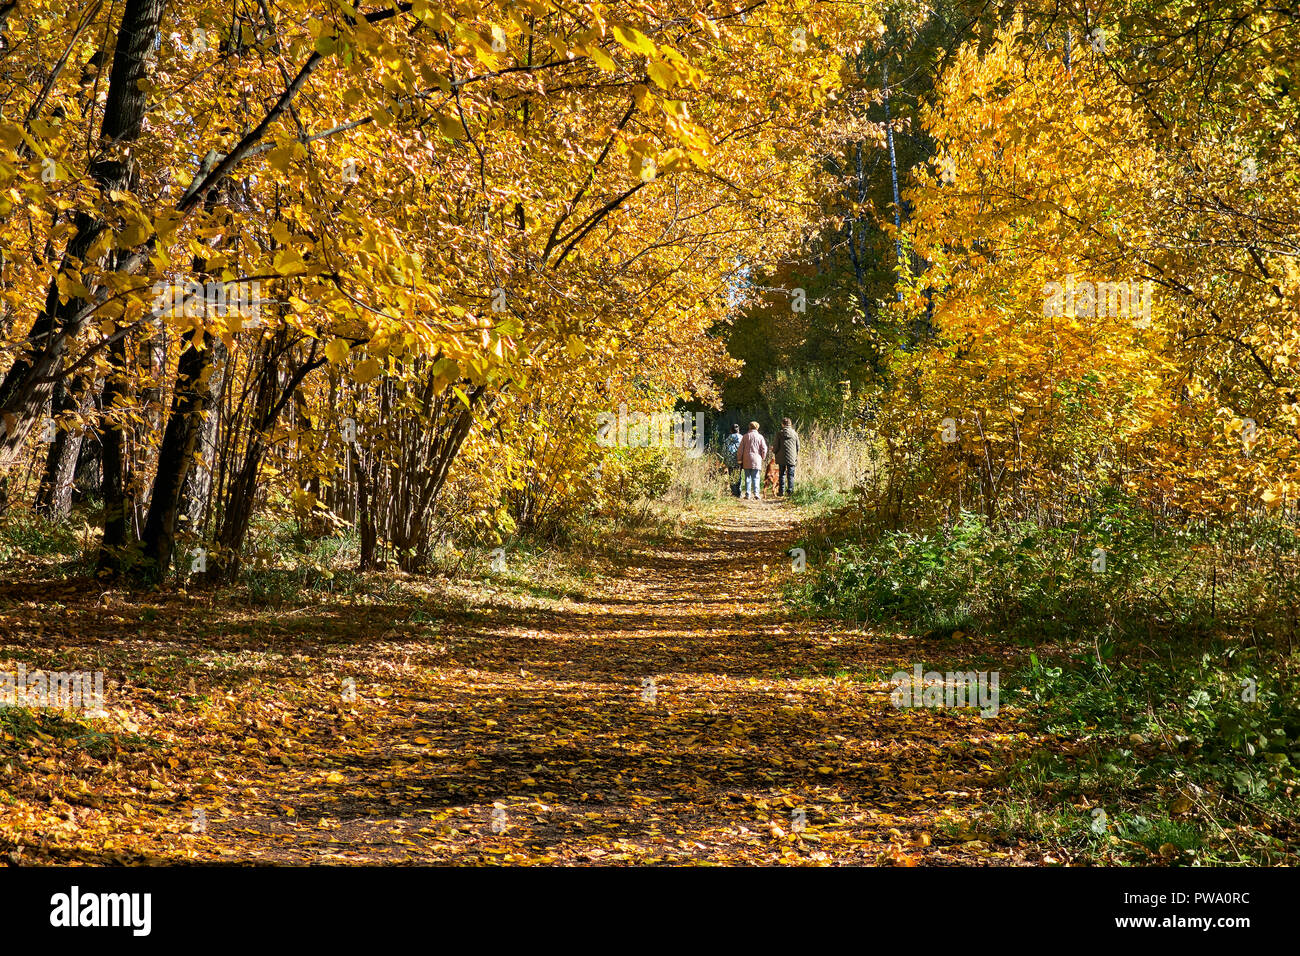 Bäume mit goldgelben Laub im Herbst. Bitsa Bitsevski Park (Park), Moskau, Russland. Stockfoto